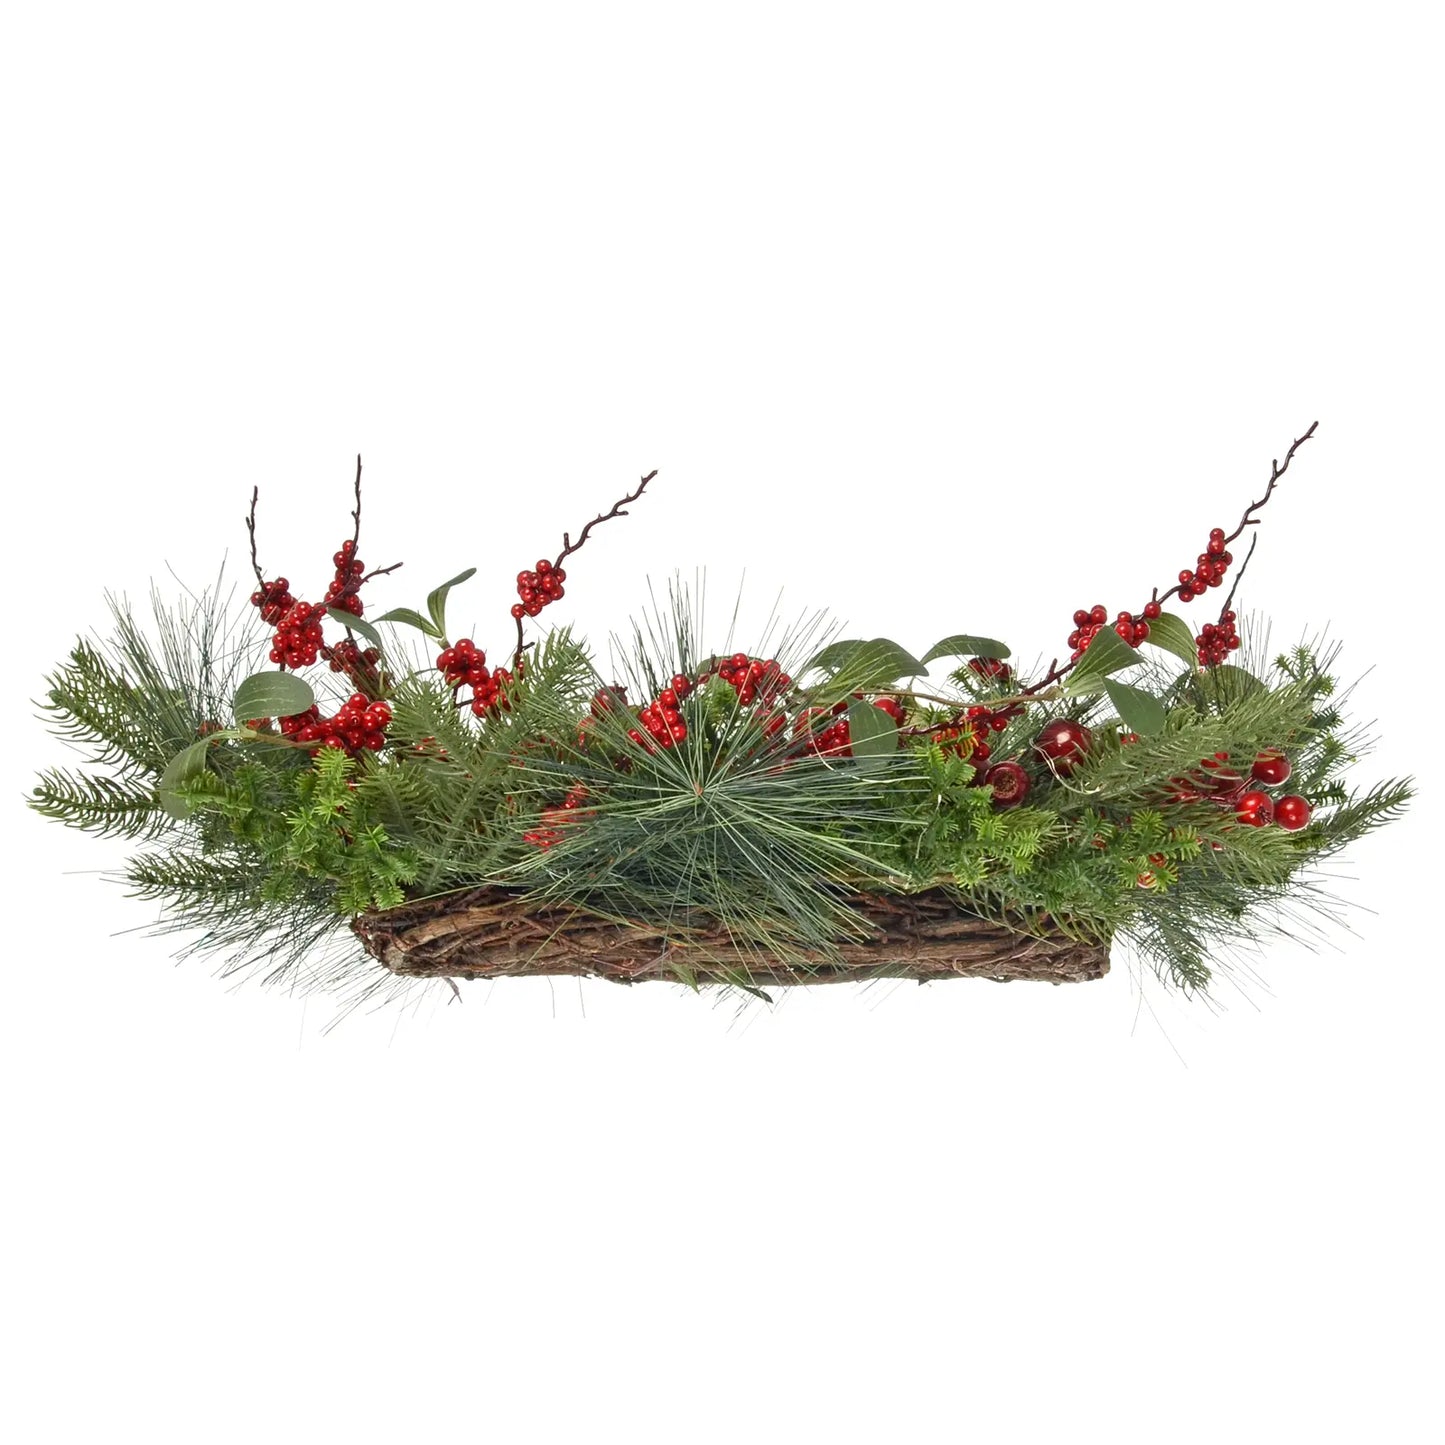 Mr Crimbo 60cm Light Up Christmas Wreath Natural Red Berries - MrCrimbo.co.uk -XS7611 - -